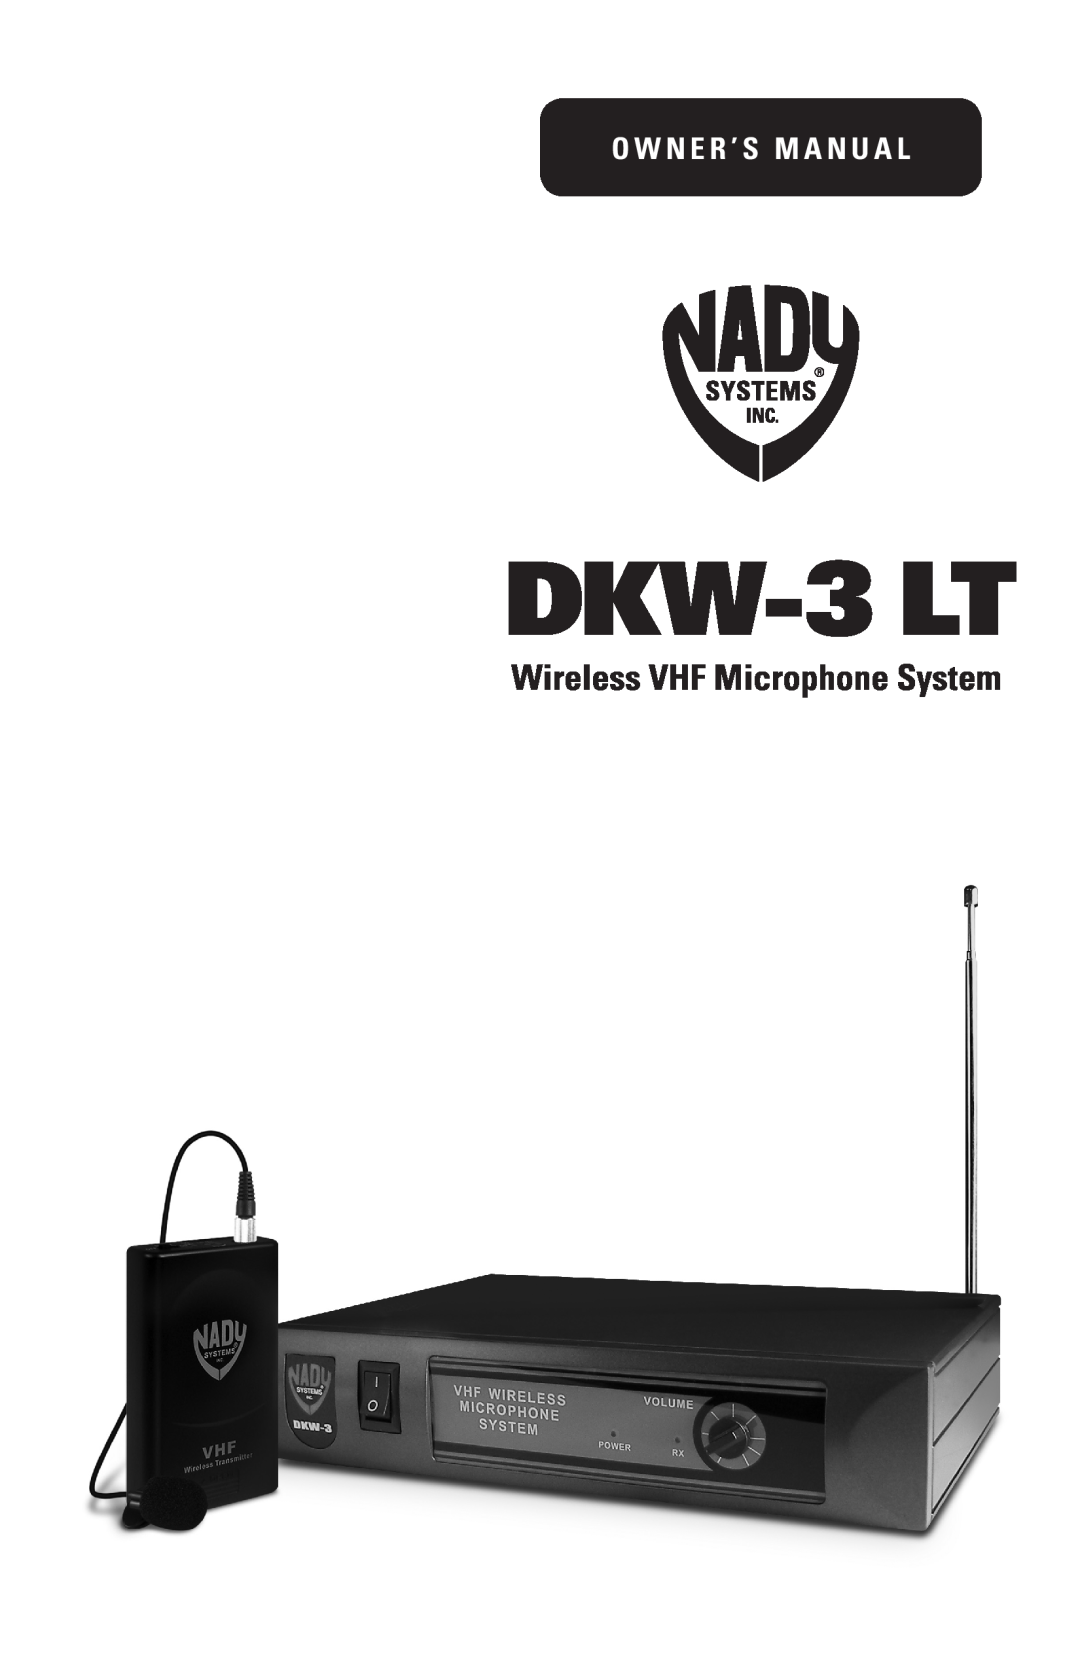 Nady Systems DKW3LTOP, DKW3LTOR, DKW3LTOD owner manual DKW-3 LT, Wireless VHF Microphone System, O w n e r ’ s M a n u a l 